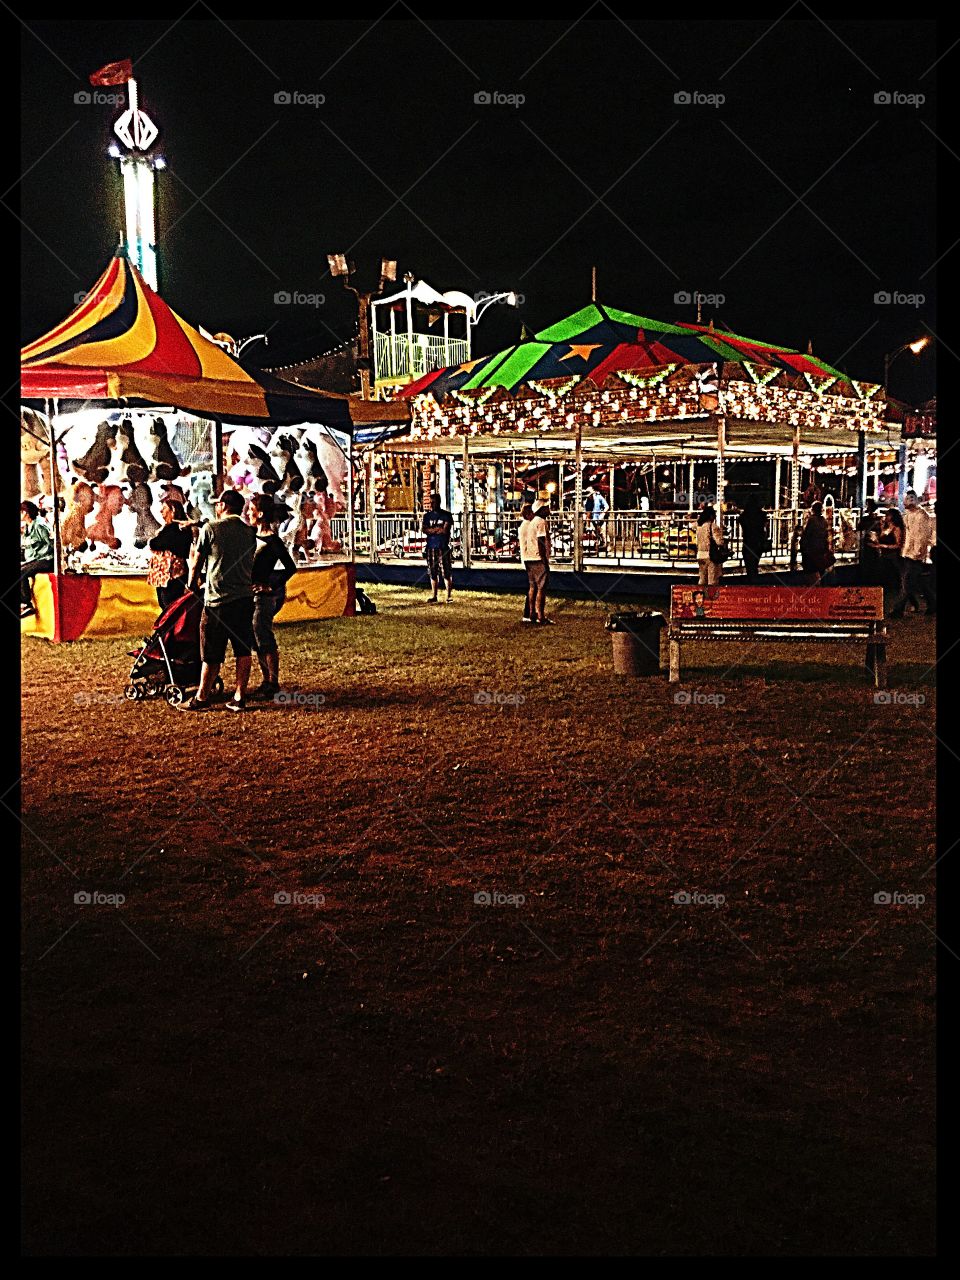 Fair, amusement park 